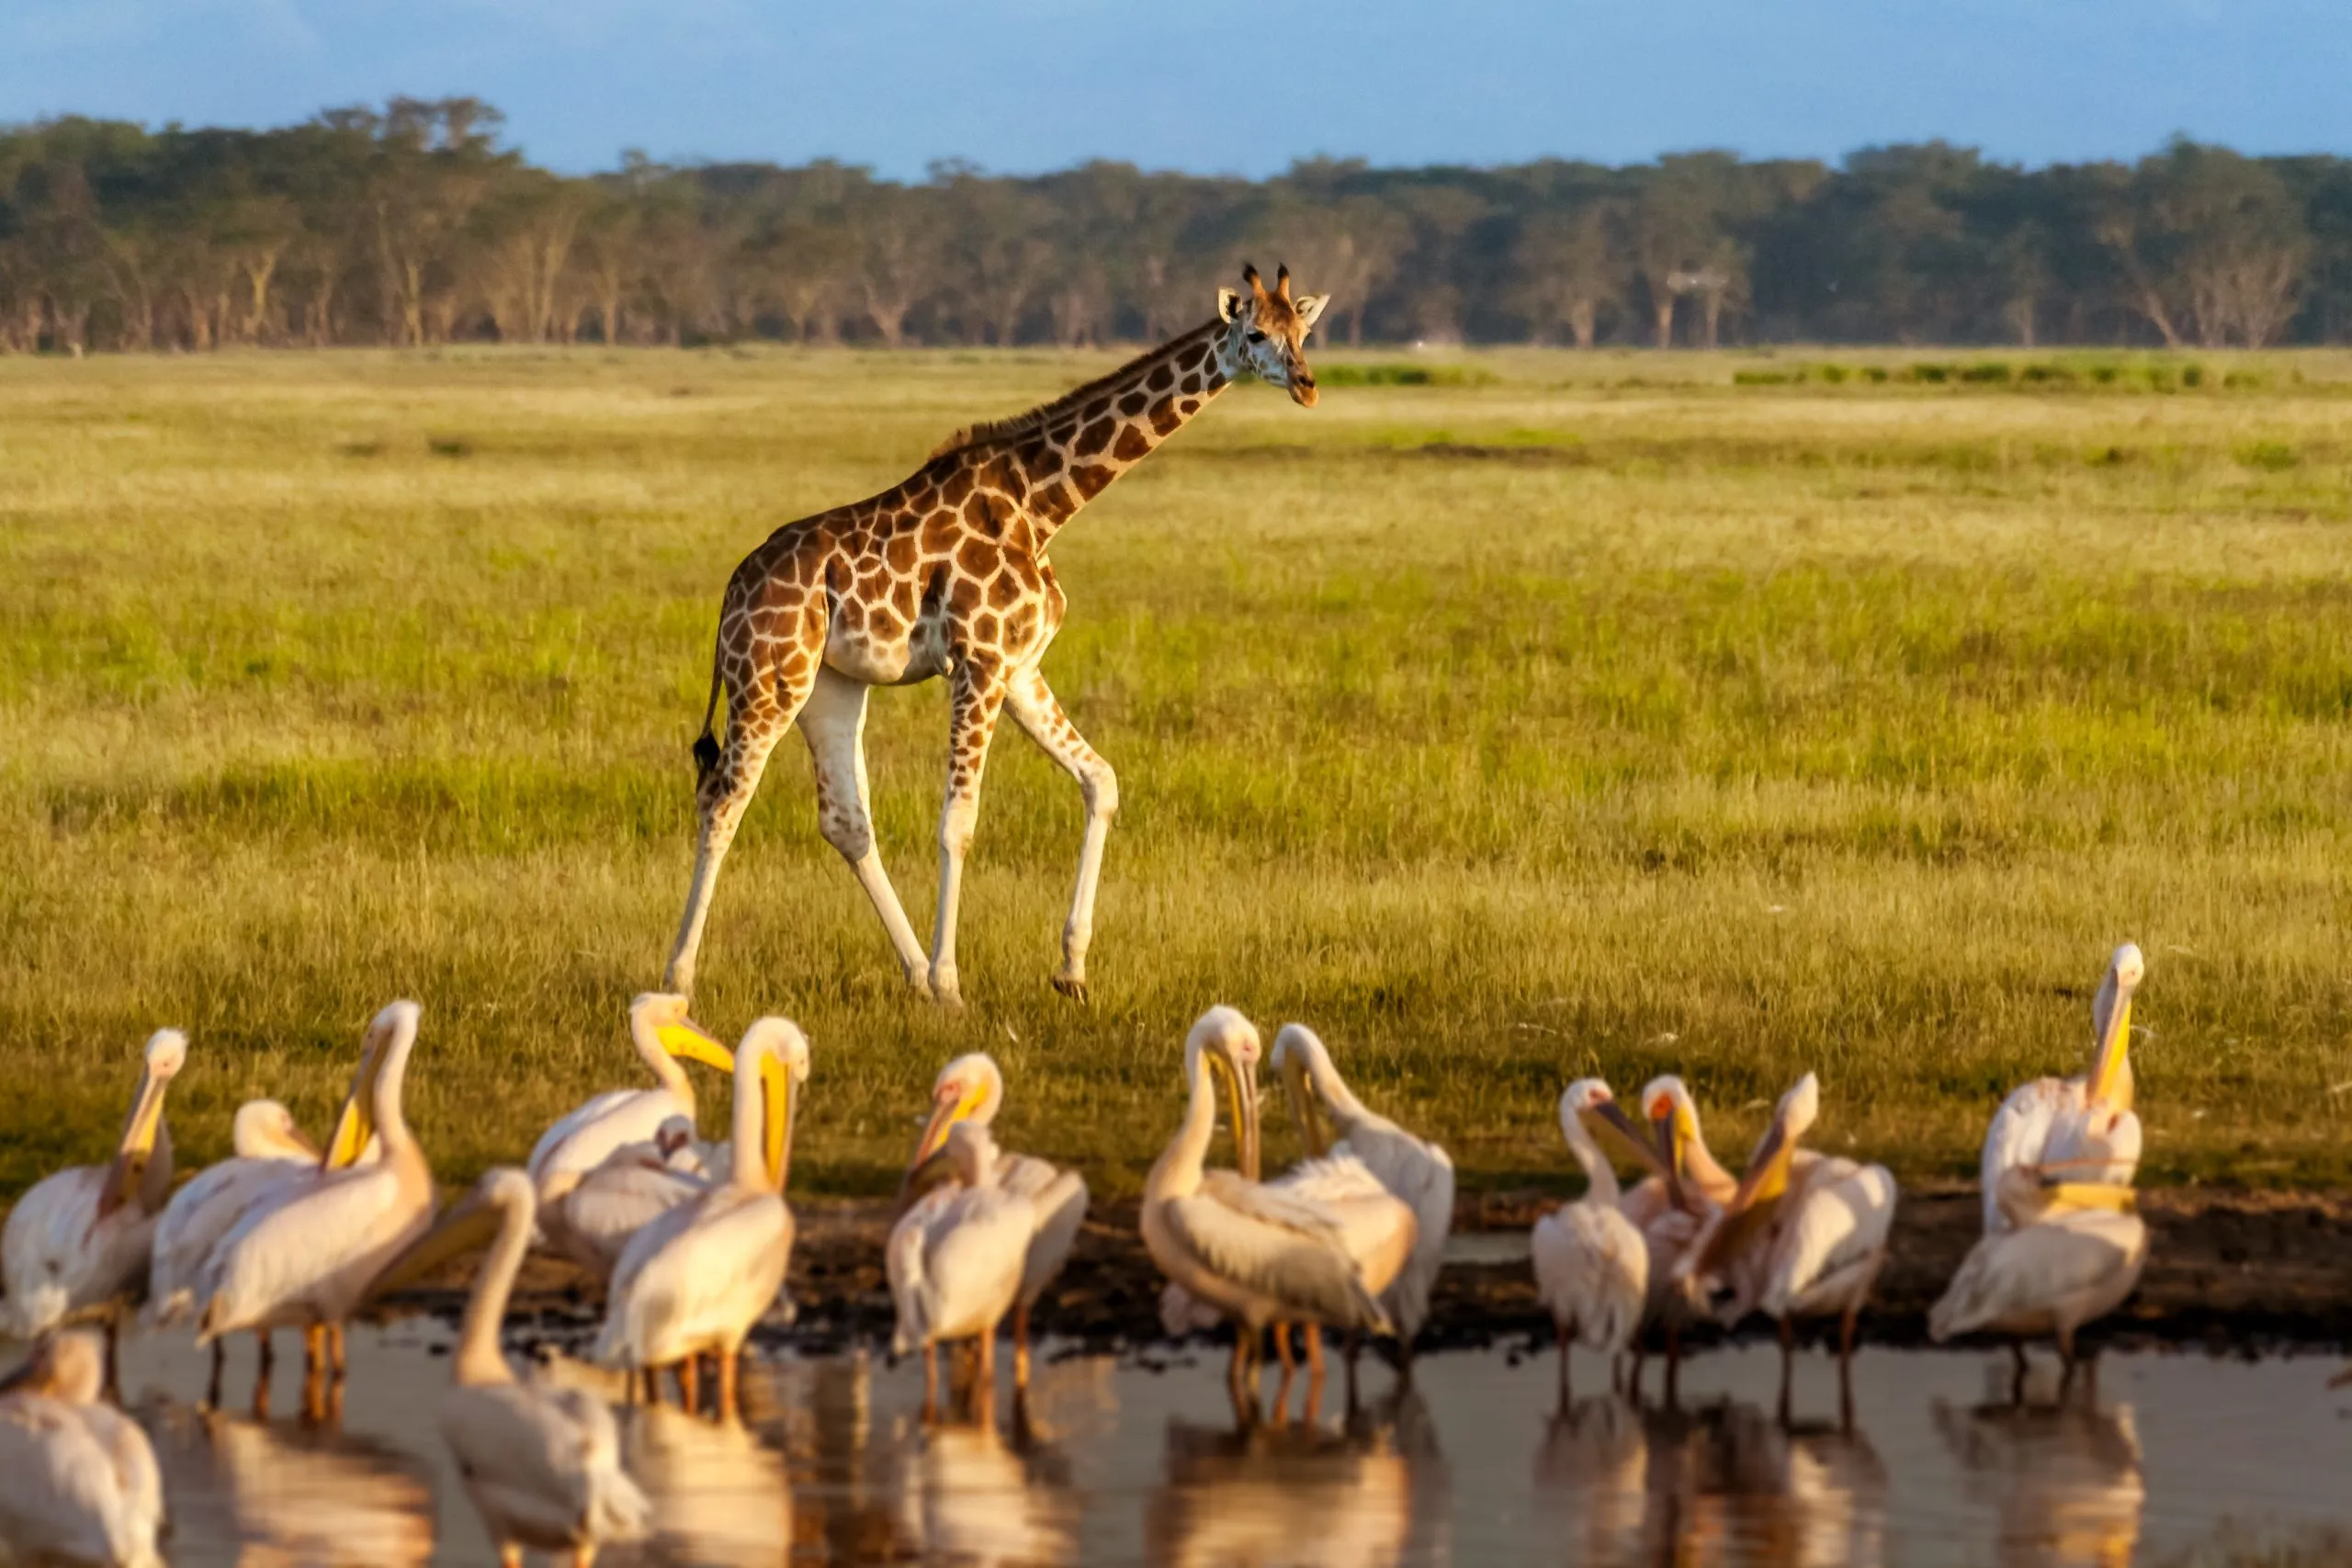 Rothschilds giraf (Giraffa camelopardalis) og pelikaner